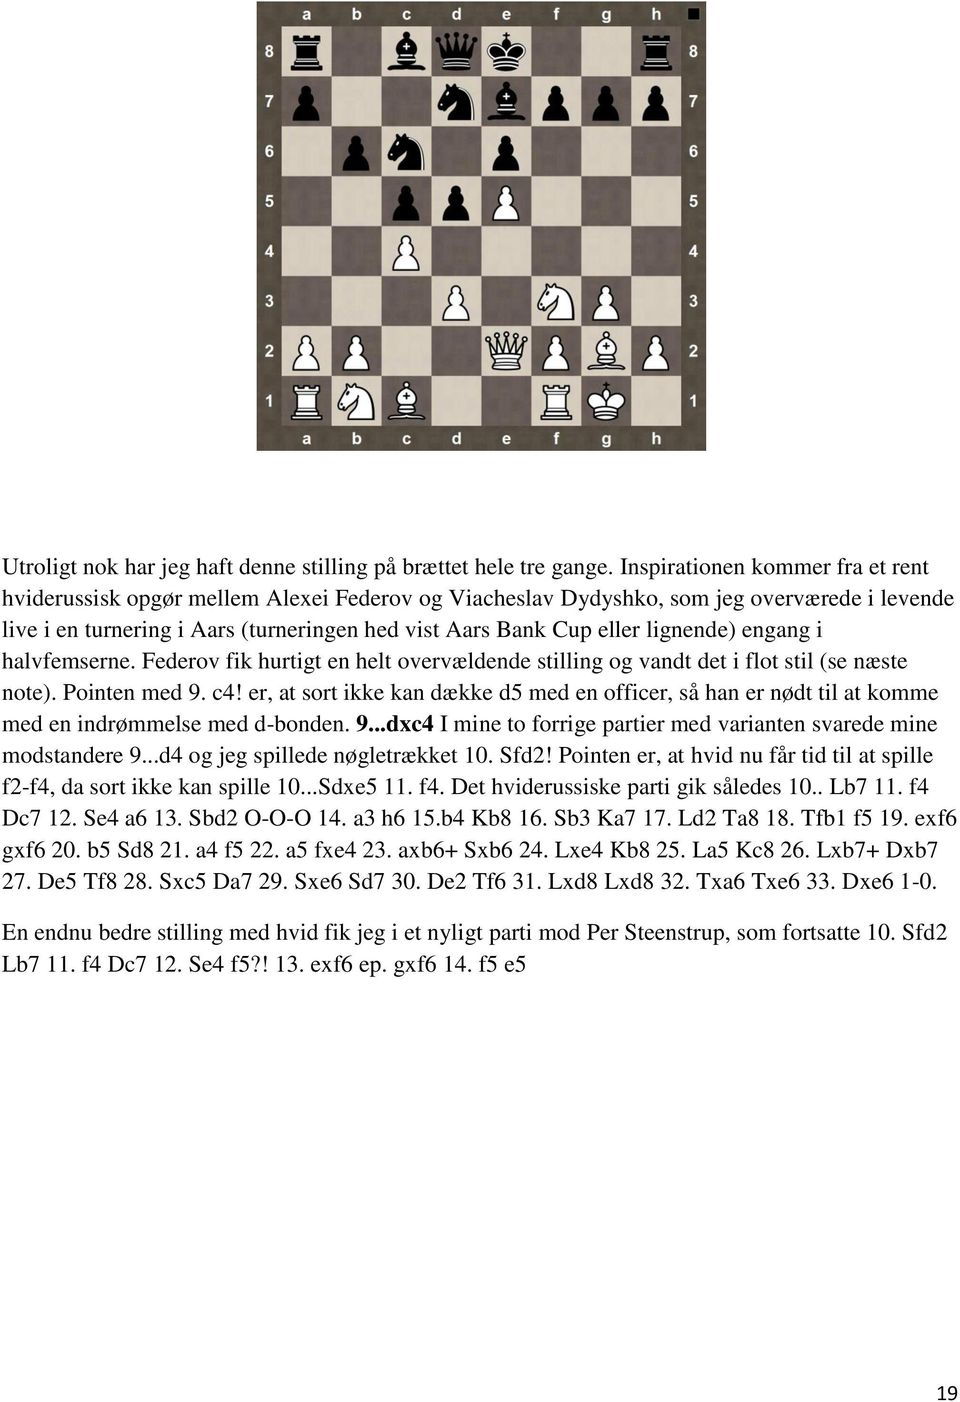 lignende) engang i halvfemserne. Federov fik hurtigt en helt overvældende stilling og vandt det i flot stil (se næste note). Pointen med 9. c!